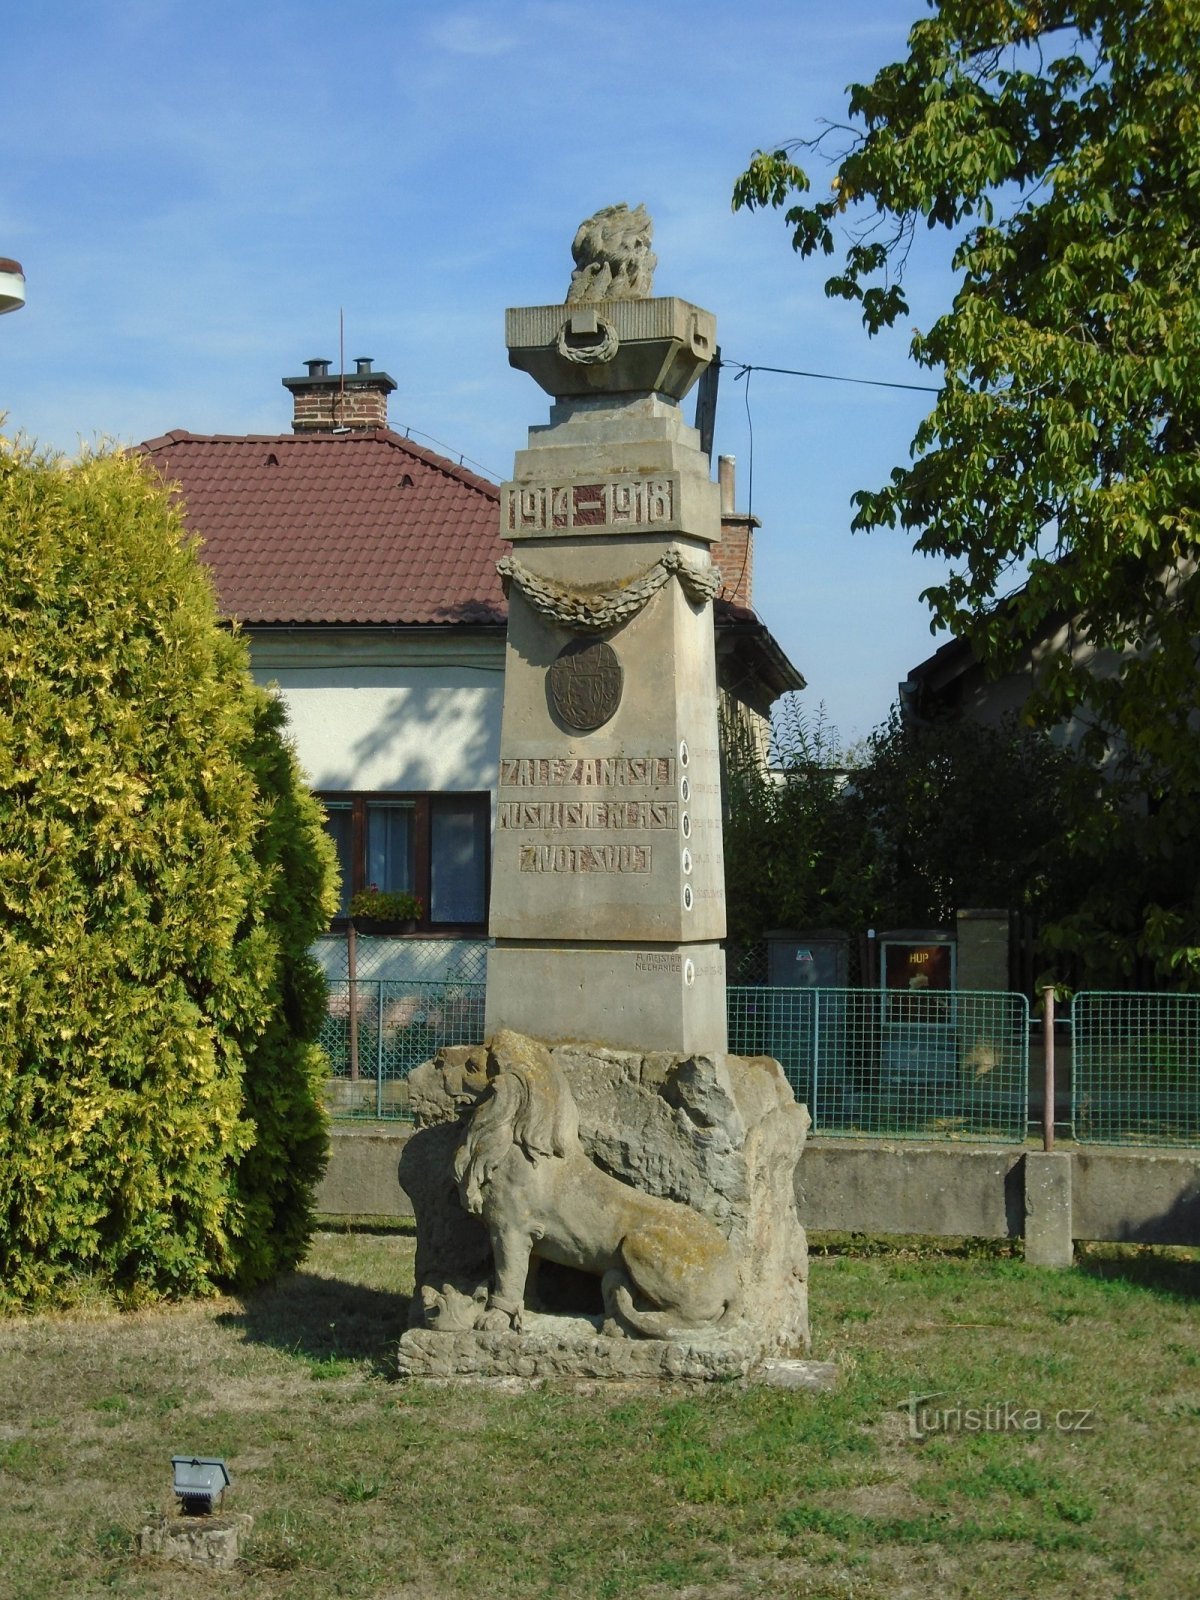 第一次世界大戦で亡くなった人々の記念碑 (Třesovice)